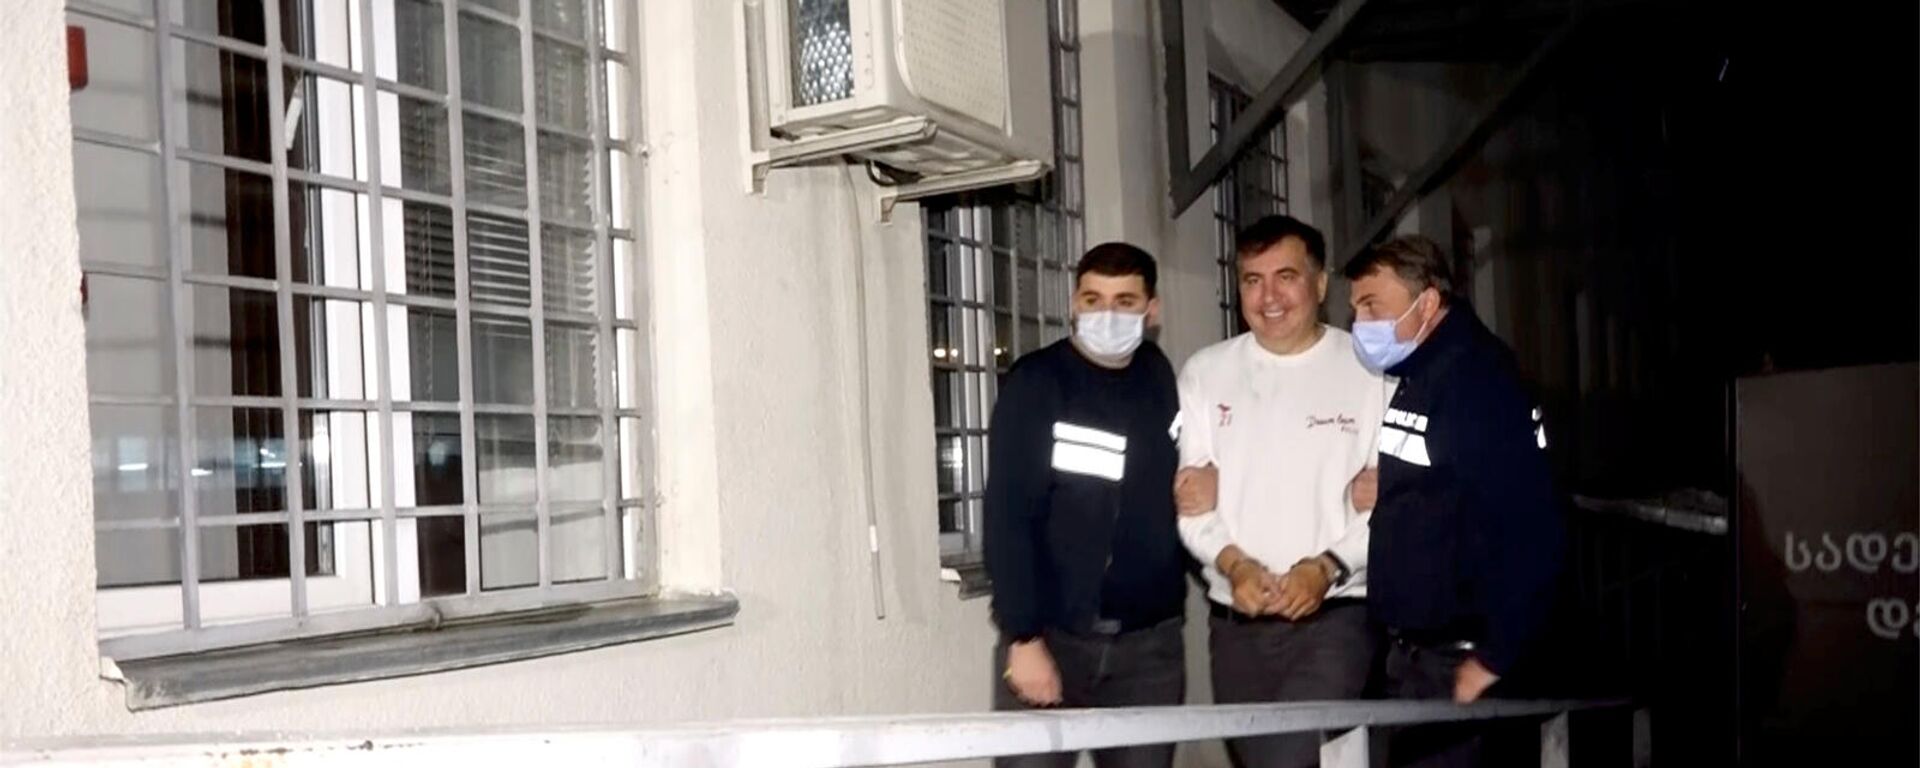 Сотрудники полиции сопровождают бывшего президента Грузии Михаила Саакашвили, который был задержан после возвращения в Грузию (1 октября 2021). Рустави - Sputnik Արմենիա, 1920, 05.10.2021